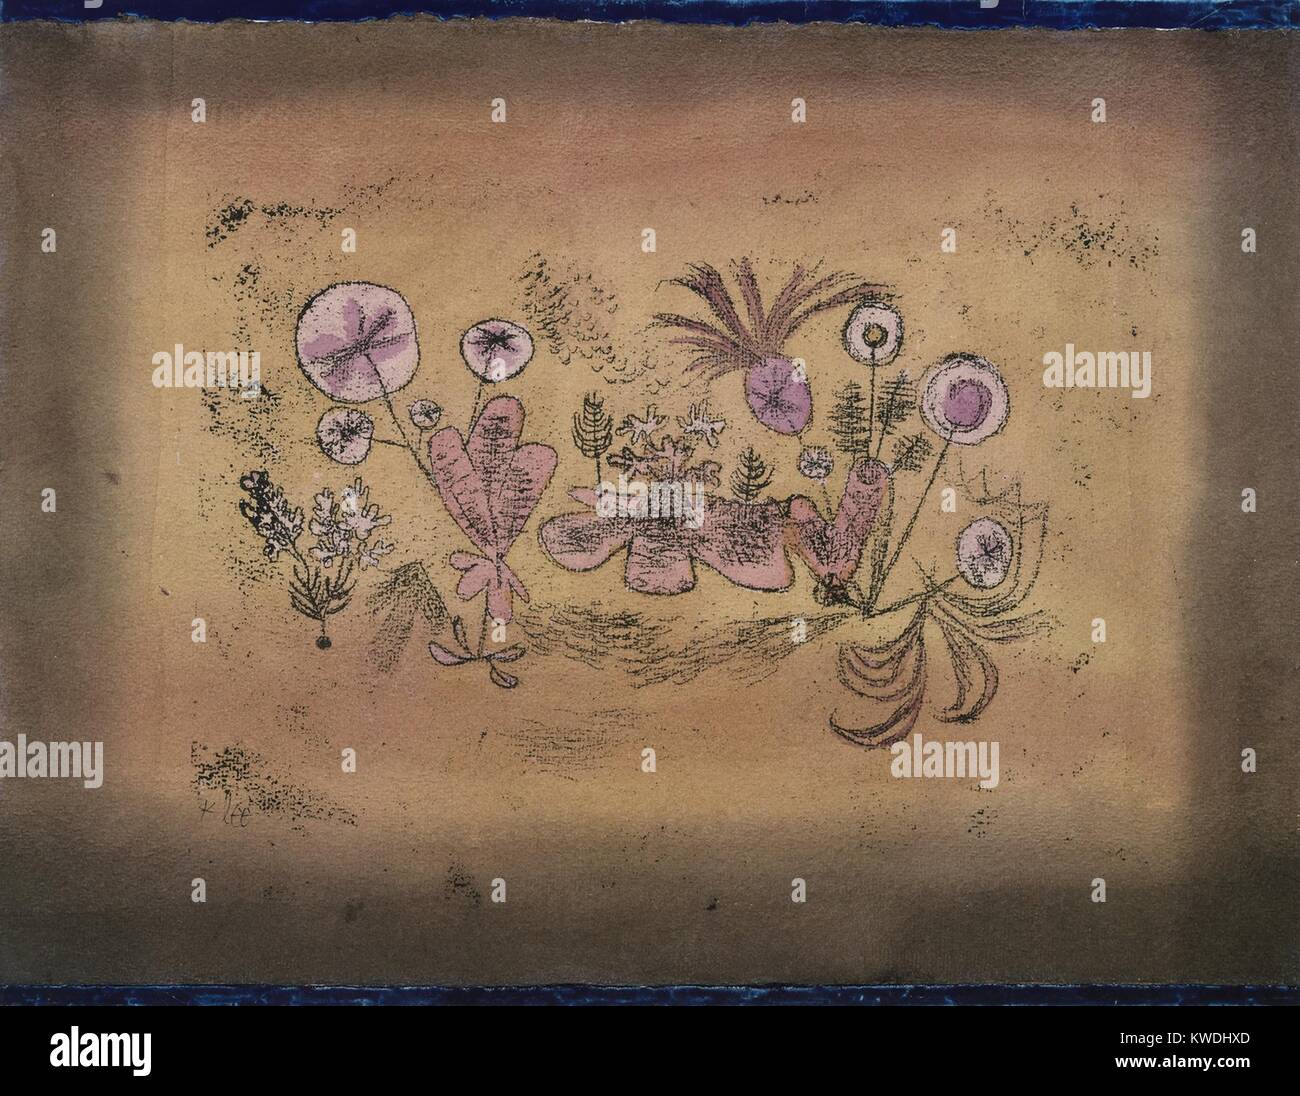 La flore médicinale, par Paul Klee, 1924, Swiss dessin, aquarelle, gouache et encre sur papier. Dessin de formes qui suggèrent les plantes connecté, de couleur rose sur un fond orange (BSLOC 2017 7 75) Banque D'Images